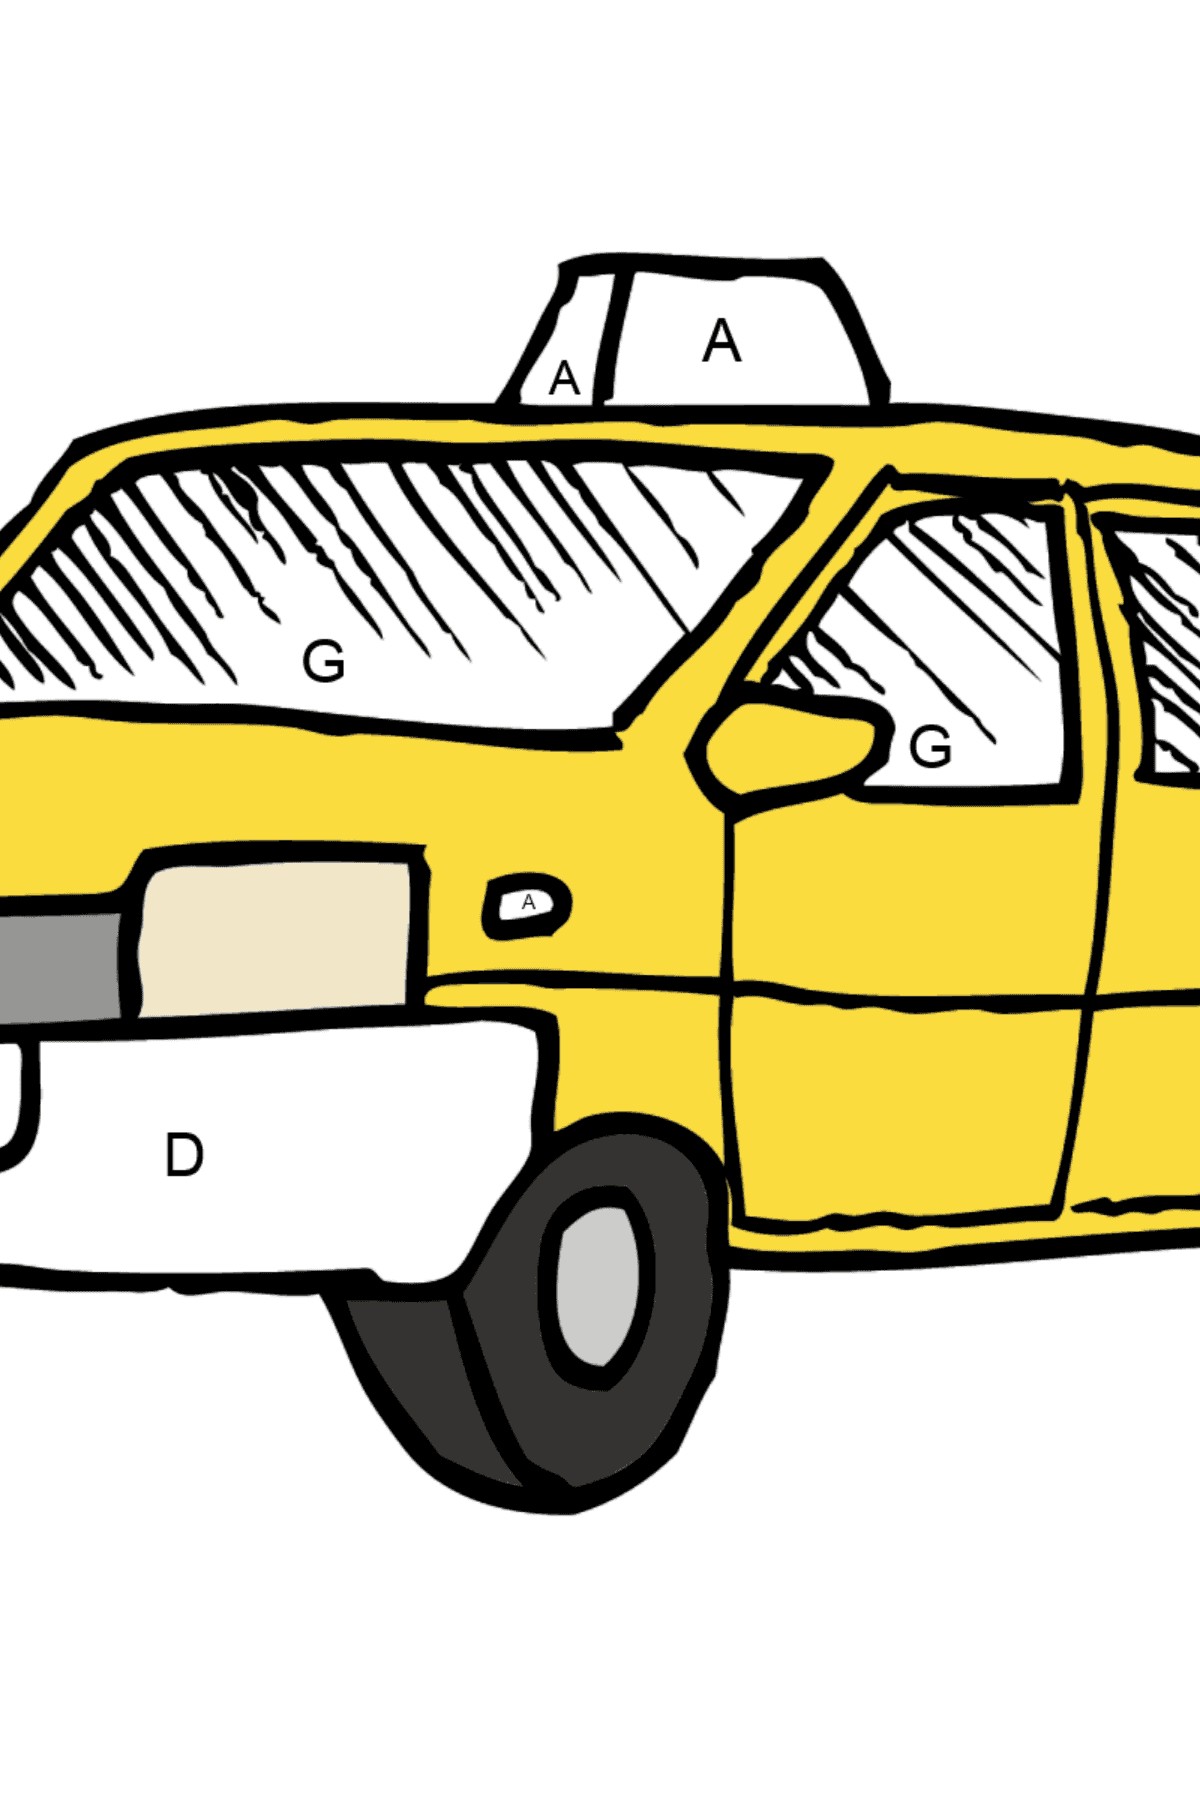 Coloriage - Un taxi jaune - Coloriage par Lettres pour les Enfants